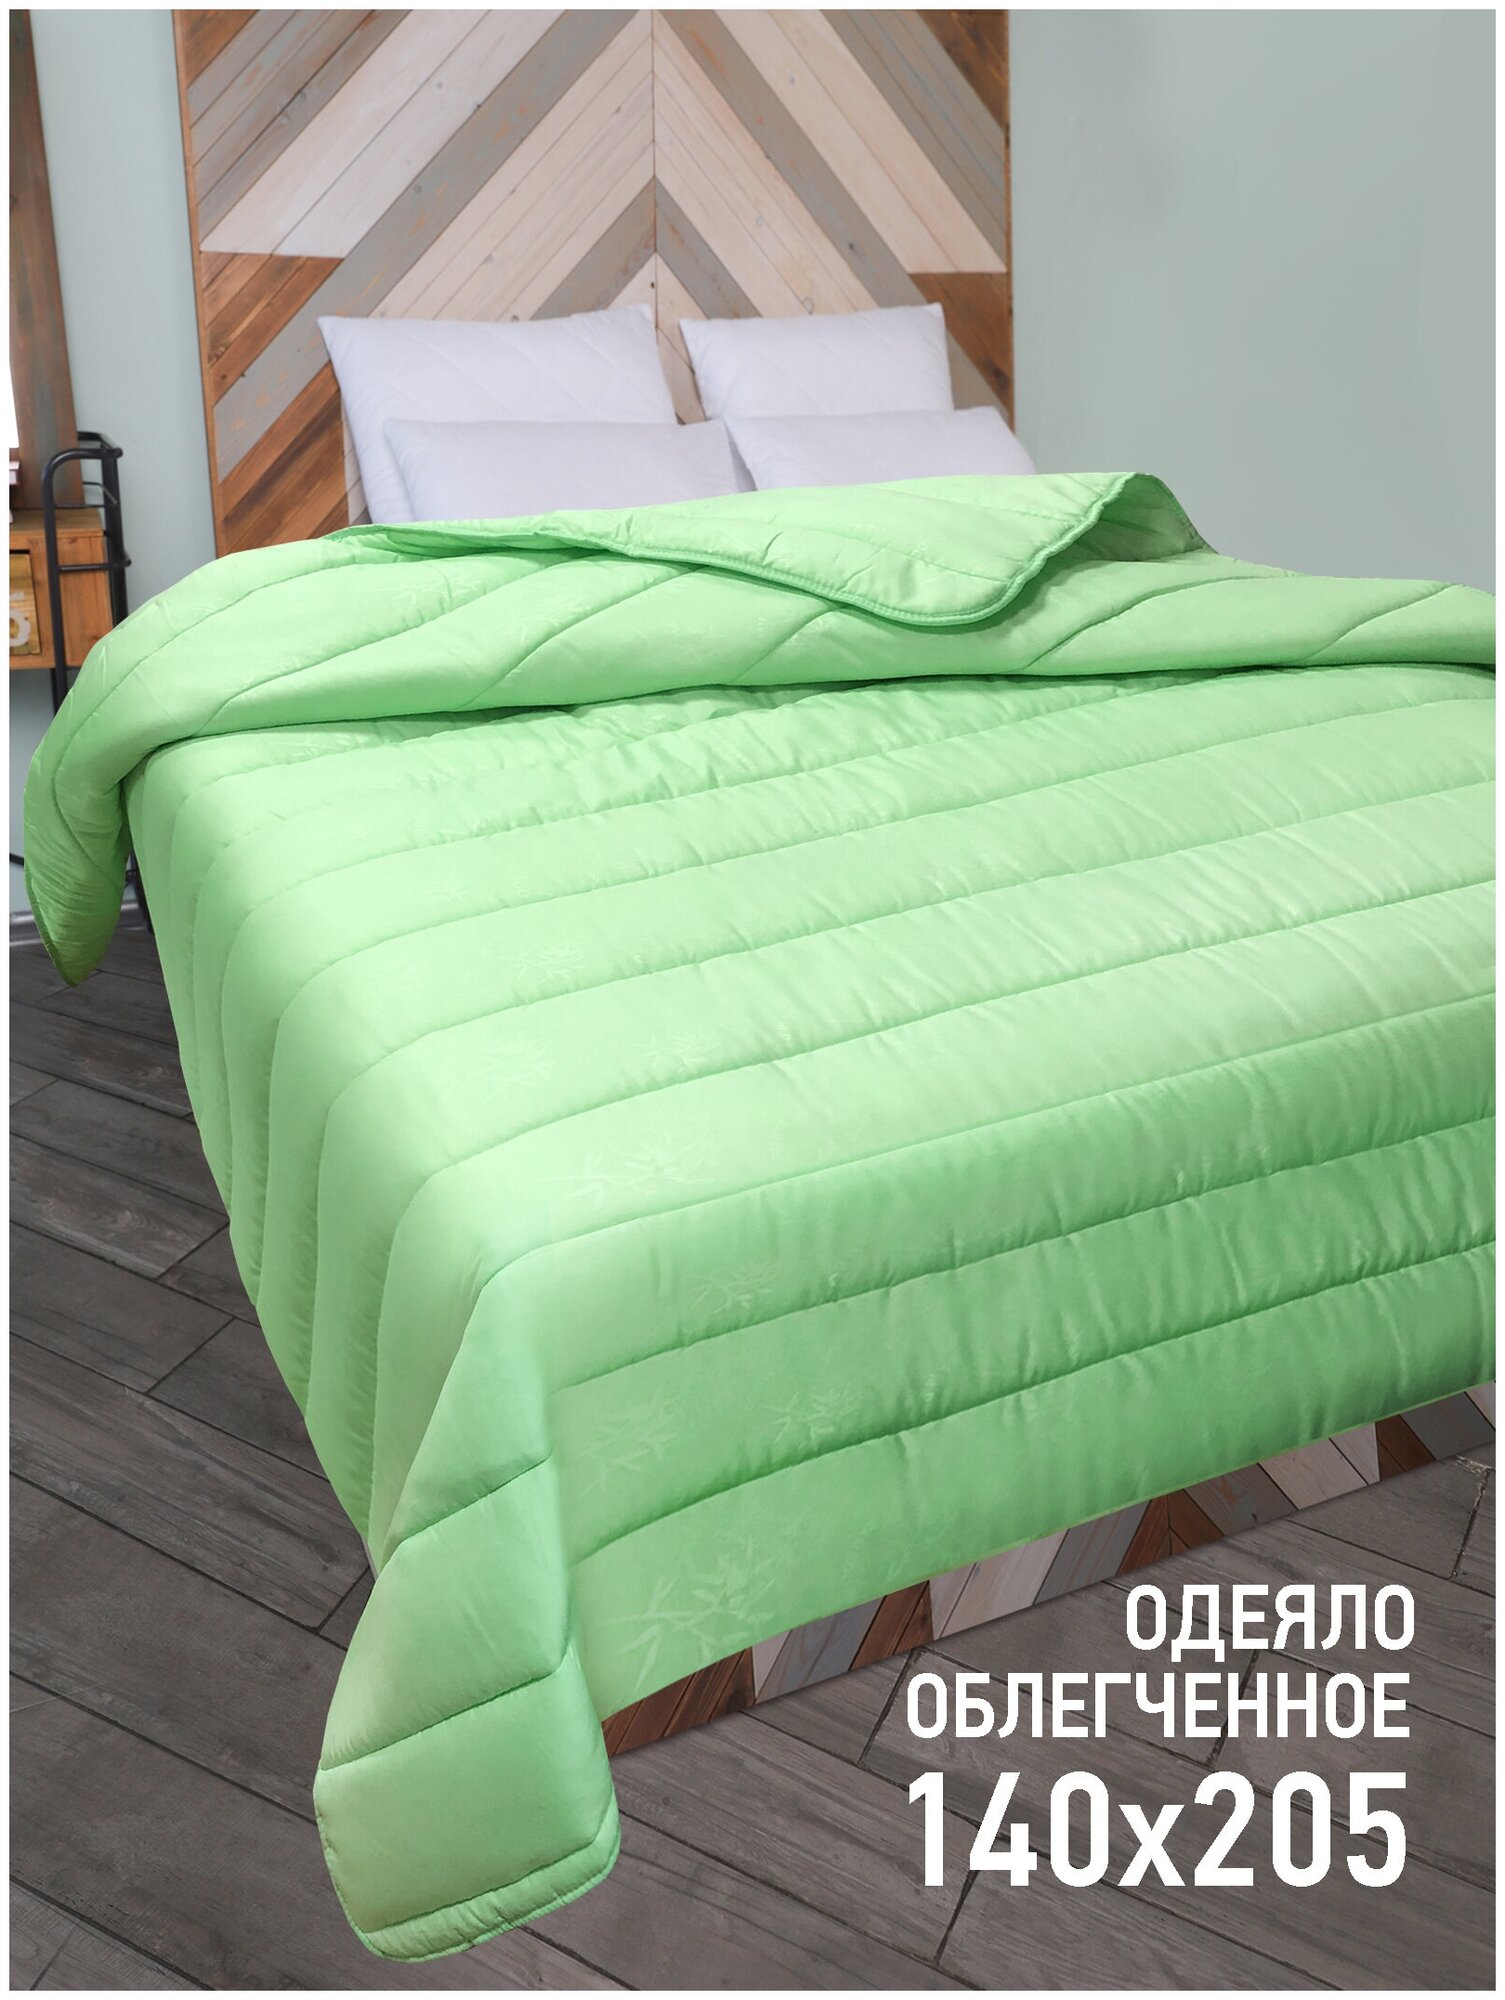 Летнее стеганое одеяло OL-TEX Miotex Бамбук 140x205 см. окантованное / Легкое полутороспальное одеяло Ол-Текс Бамбук / Легкое одеяло 140 x 205 см.